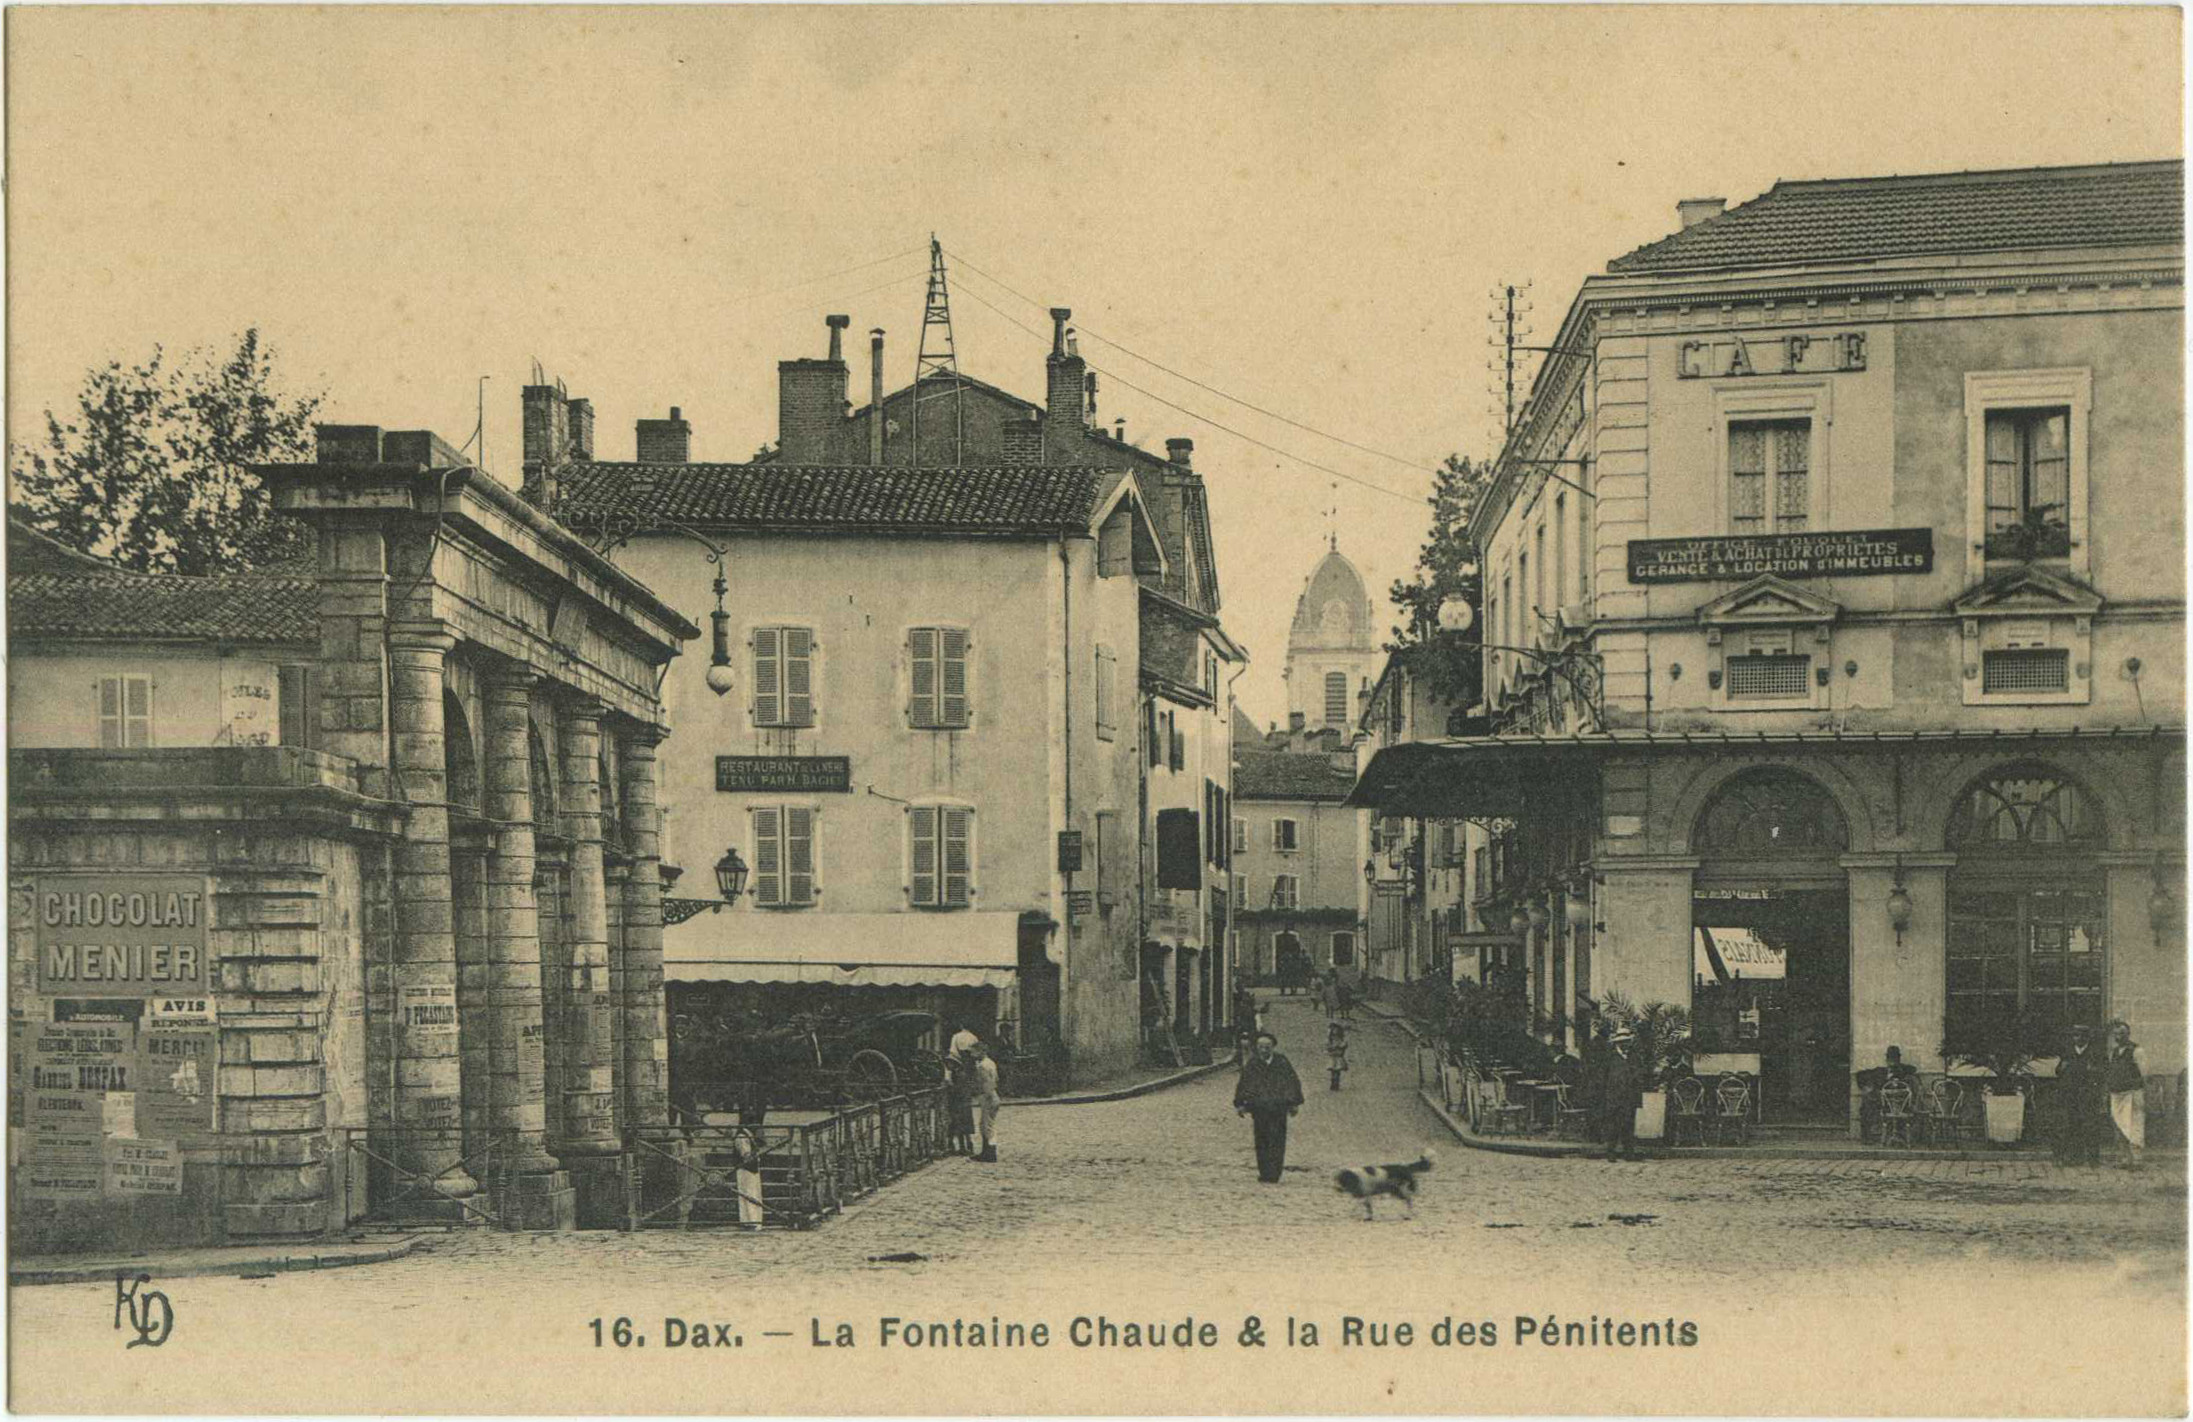 Dax - La Fontaine Chaude & la Rue des Pénitents